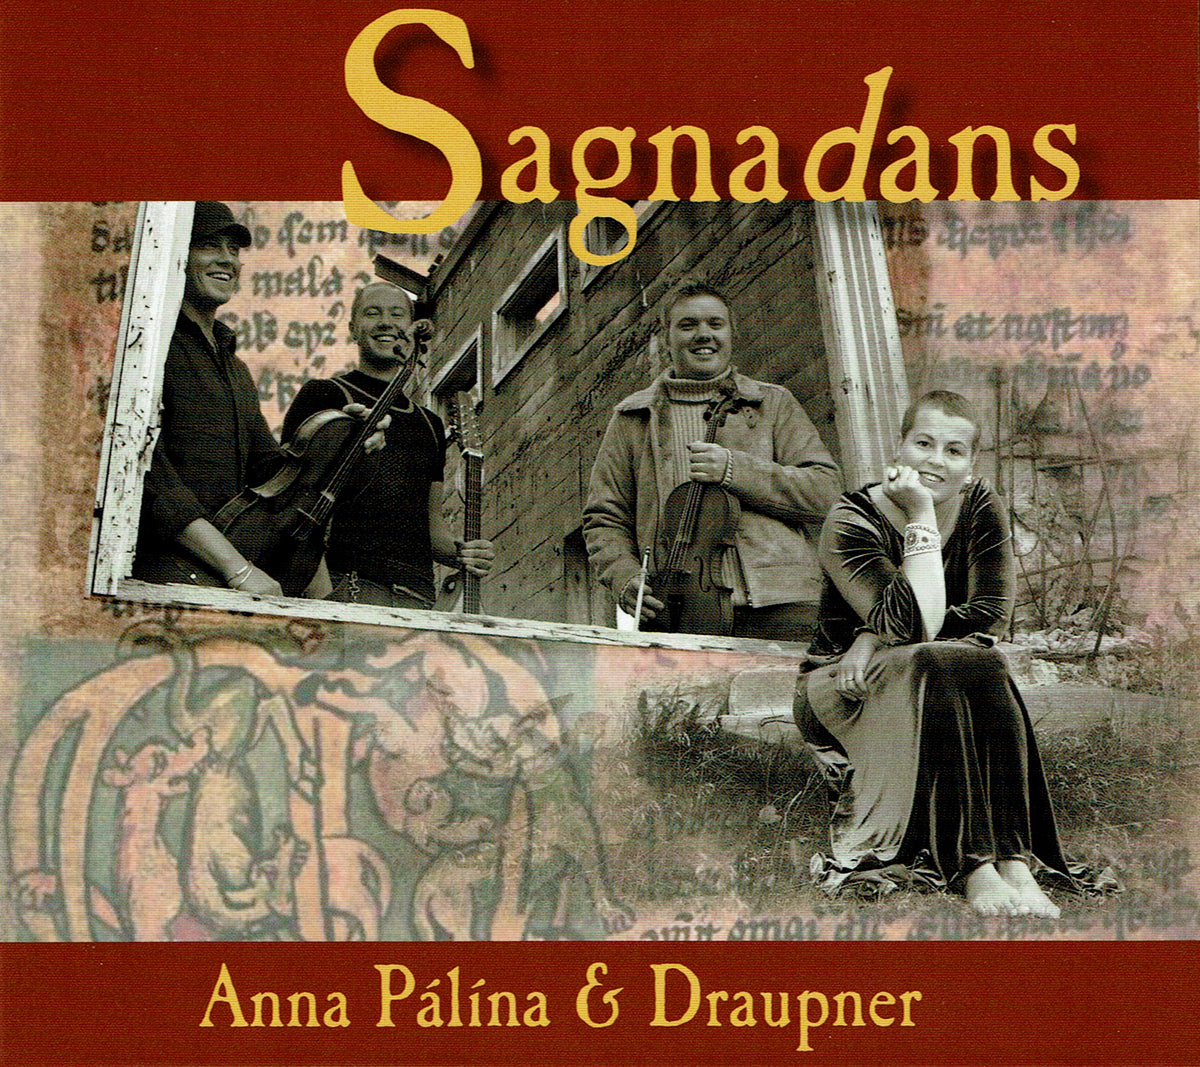 Anna Pálína og Draupner - Sagnadans (CD)